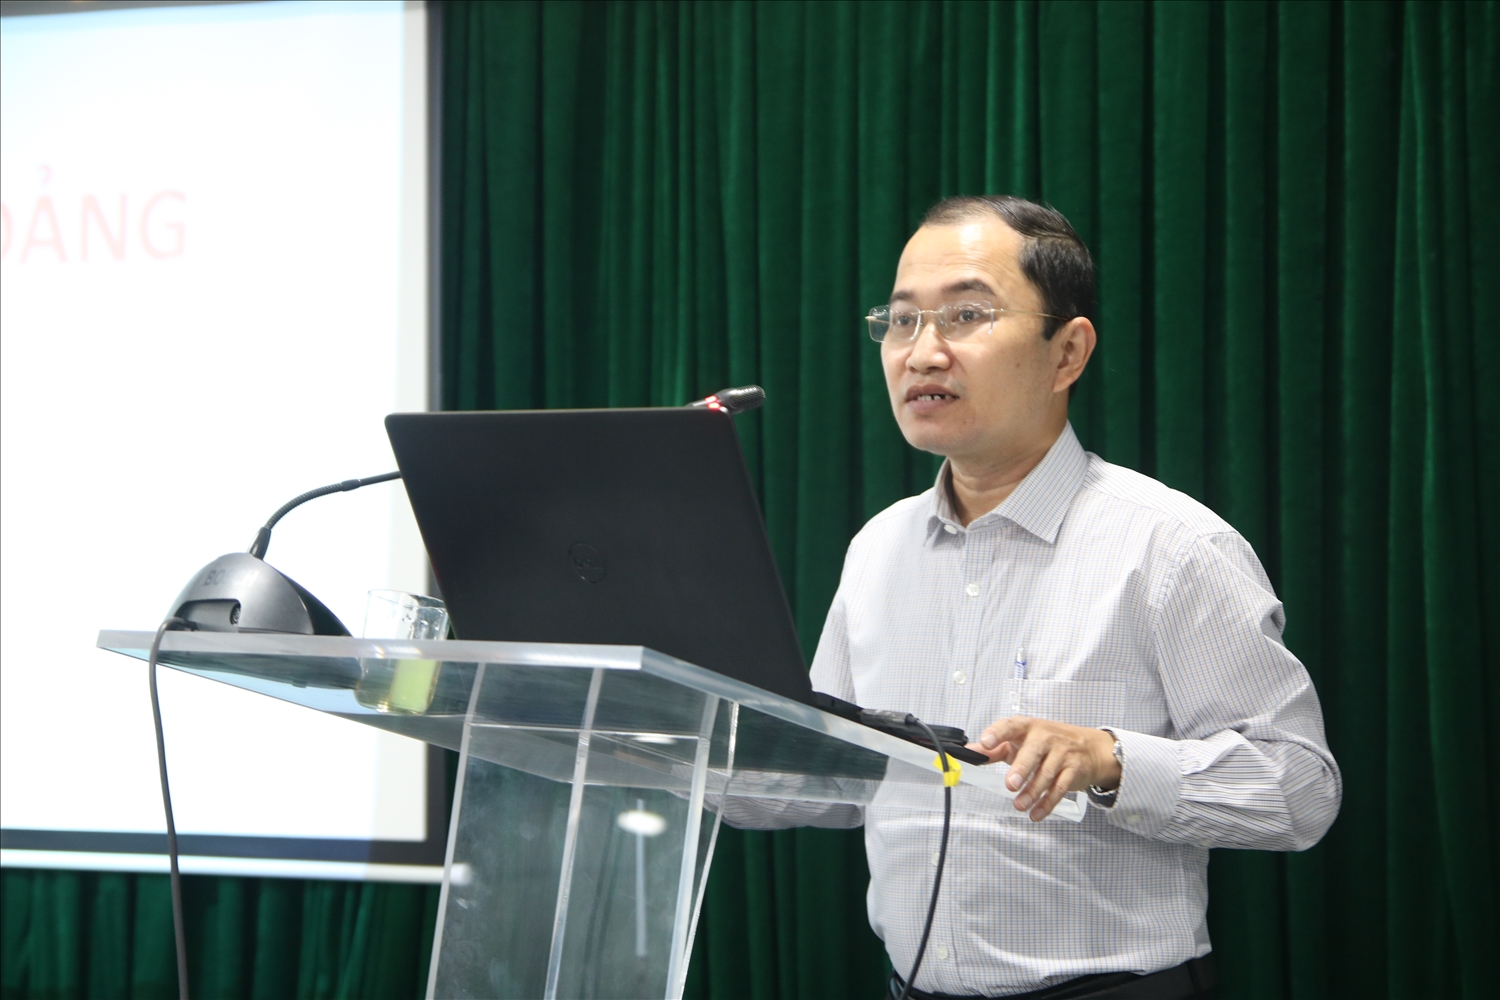 Đồng chí Nguyễn Khắc Tiến - Ủy viên Ban Chấp hành Đảng bộ Khối, Phó Trưởng ban Tổ chức Đảng ủy khối cơ quan Trung ương trình bày chuyên đề tại Hội nghị